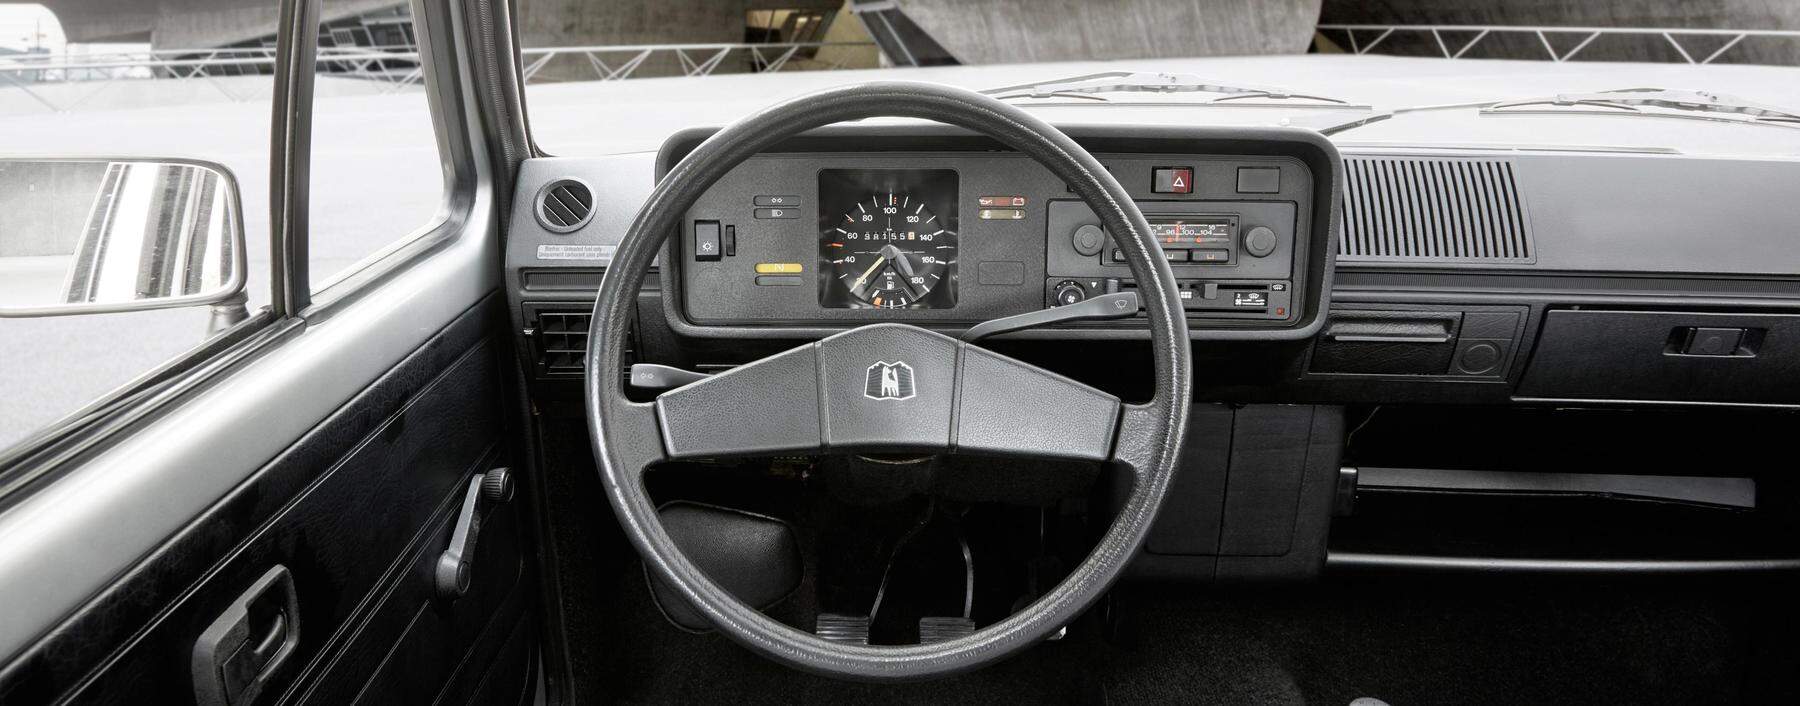 Wandel im Autobau: 1974 waren Airbag und elektrische Fensterheber noch lang nicht an Bord. Dafür das gelbe Choke-Lämpchen für den Kaltstart. Radio? Aufpreis! Touchscreen? Pure Science-Fiction!